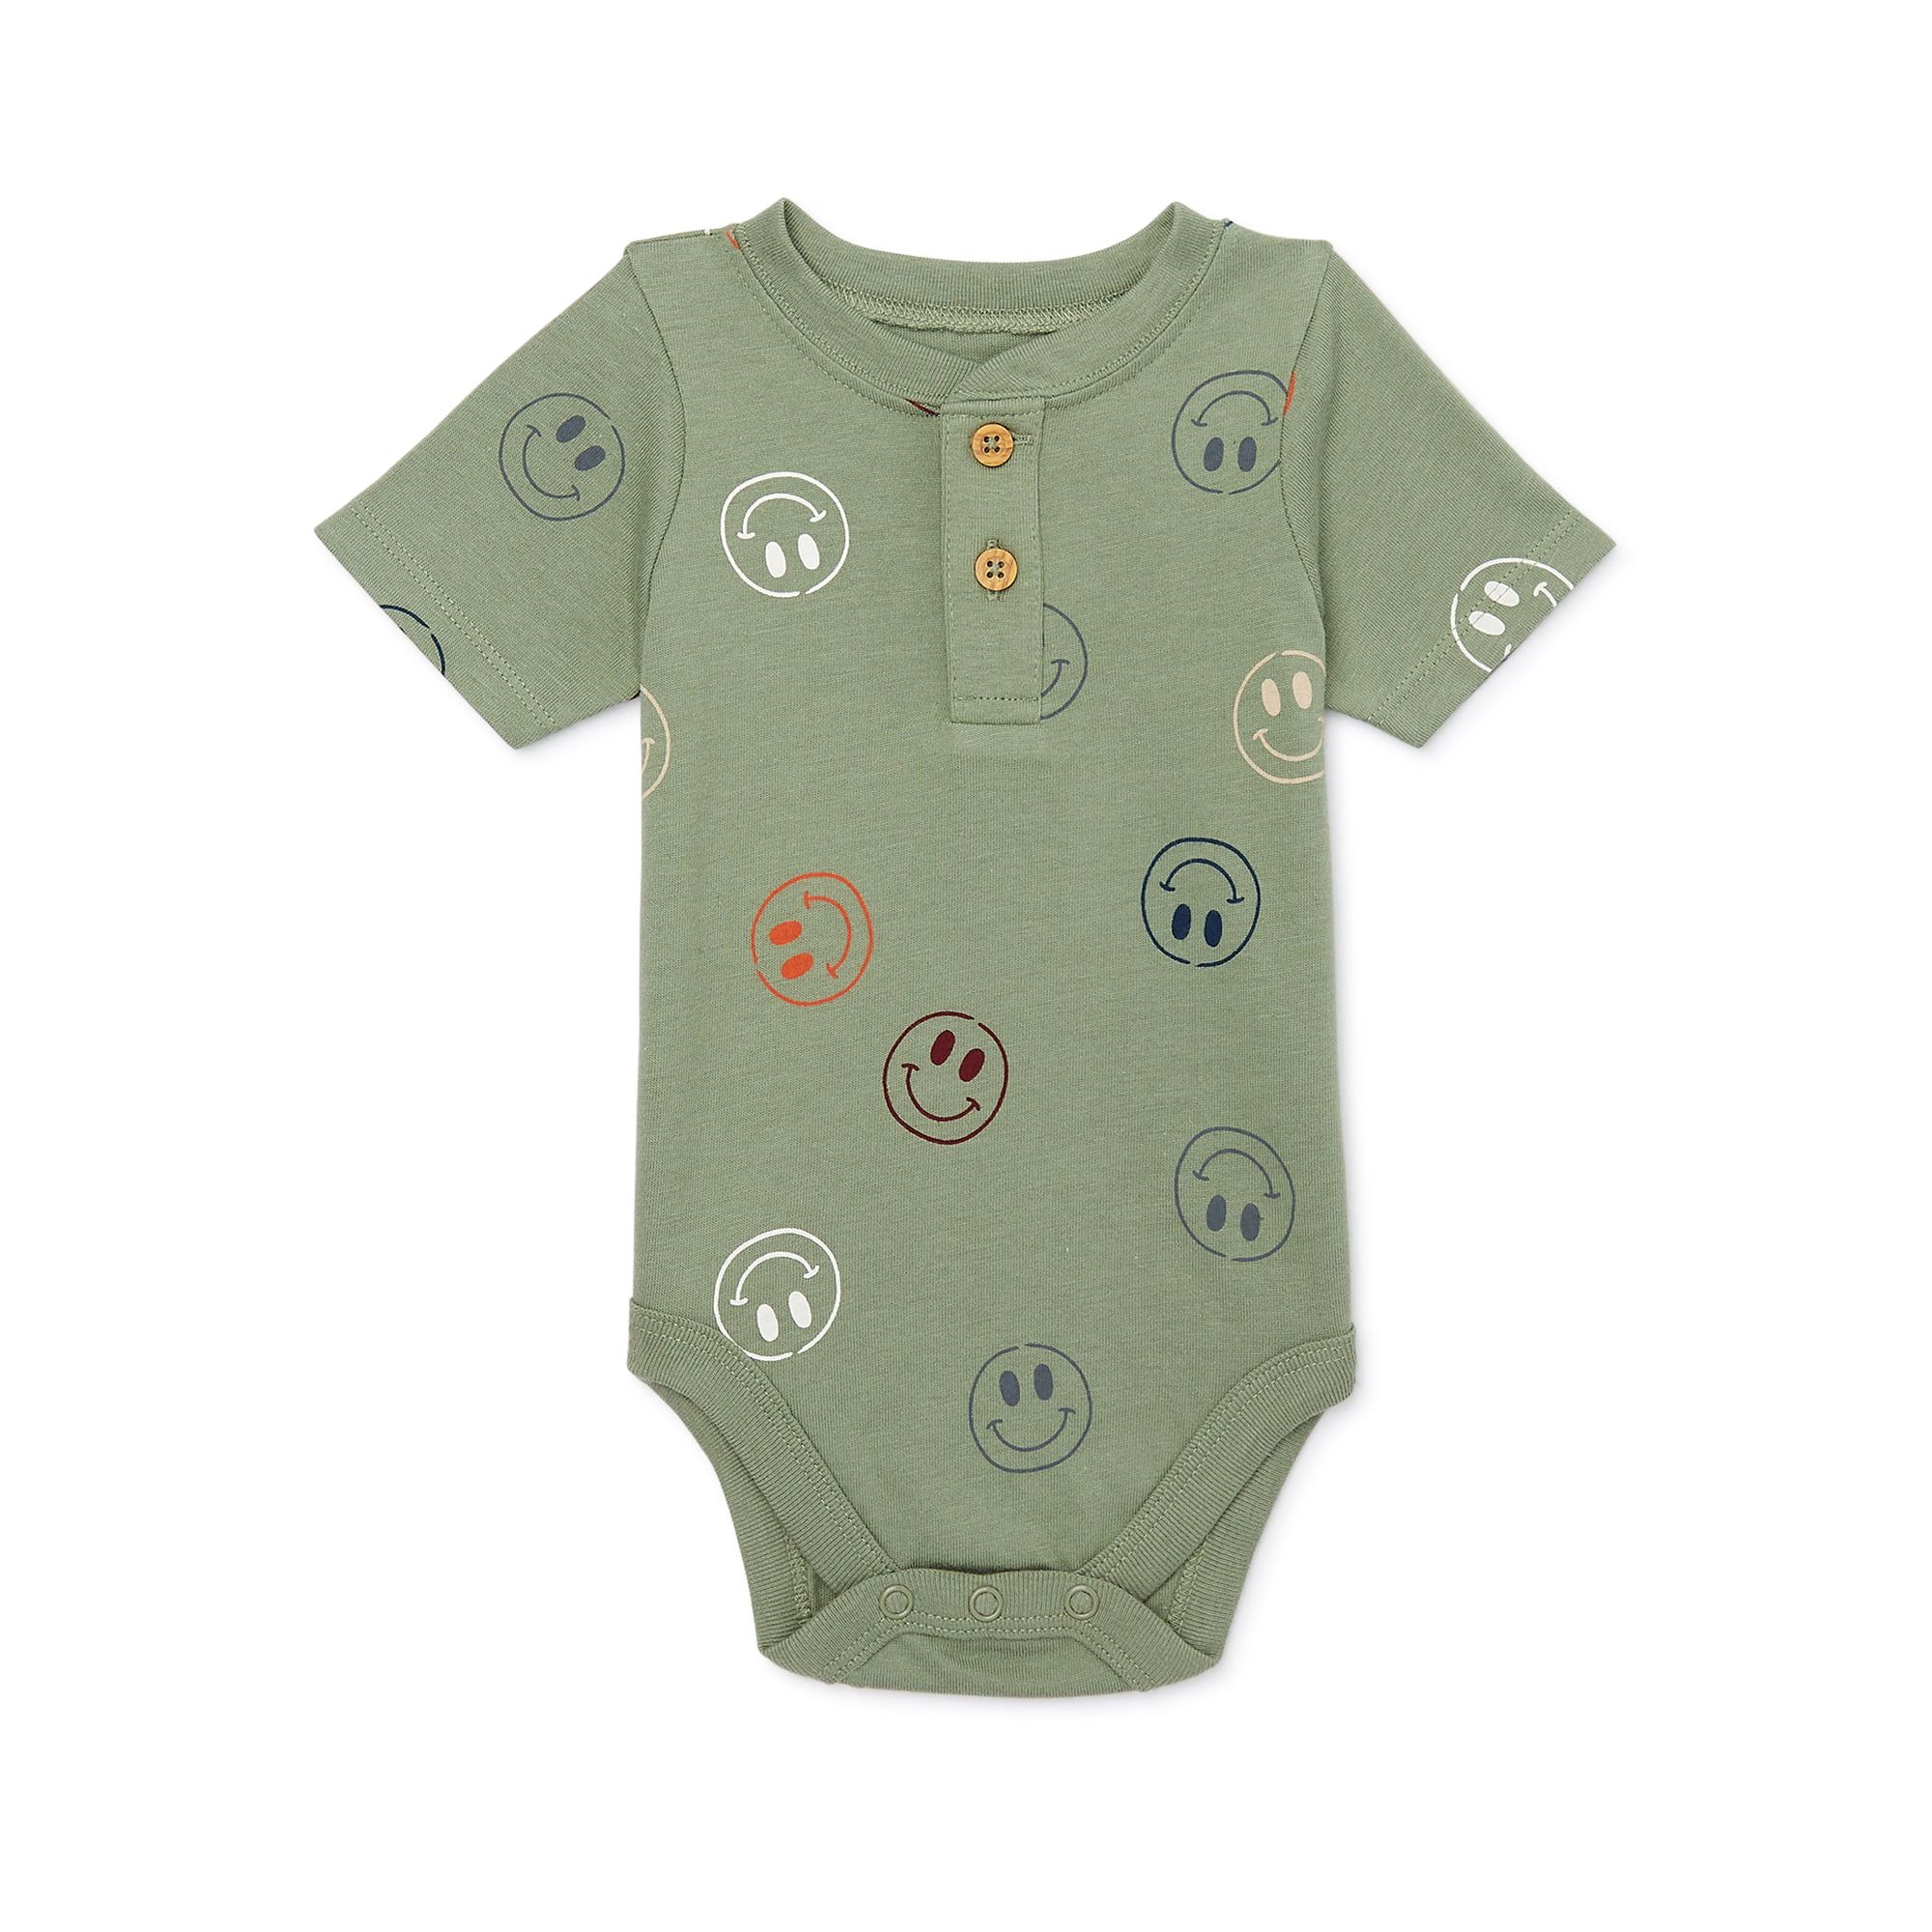 Garanimals Baby Boy Short Sleeve Henley Bodysuit, Sizes 0-24 Months | Walmart (US)